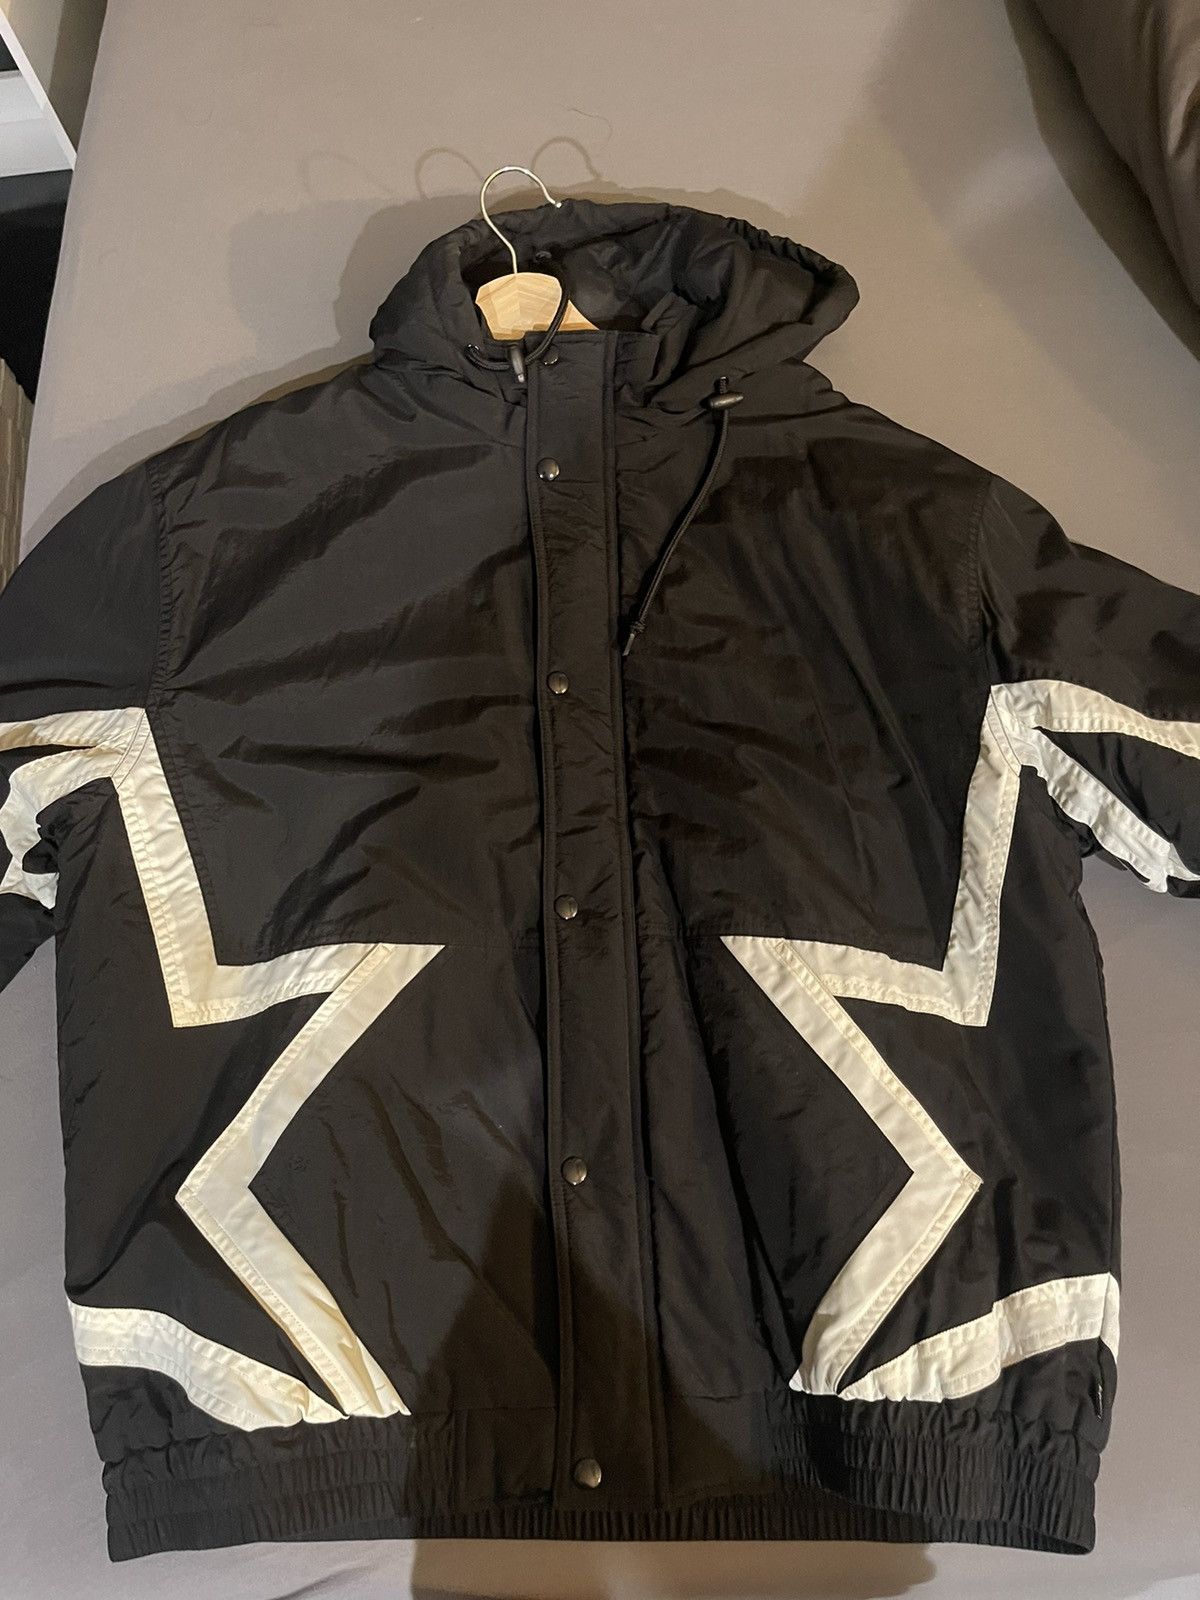 Supreme supreme stars puffy jacket | Grailed